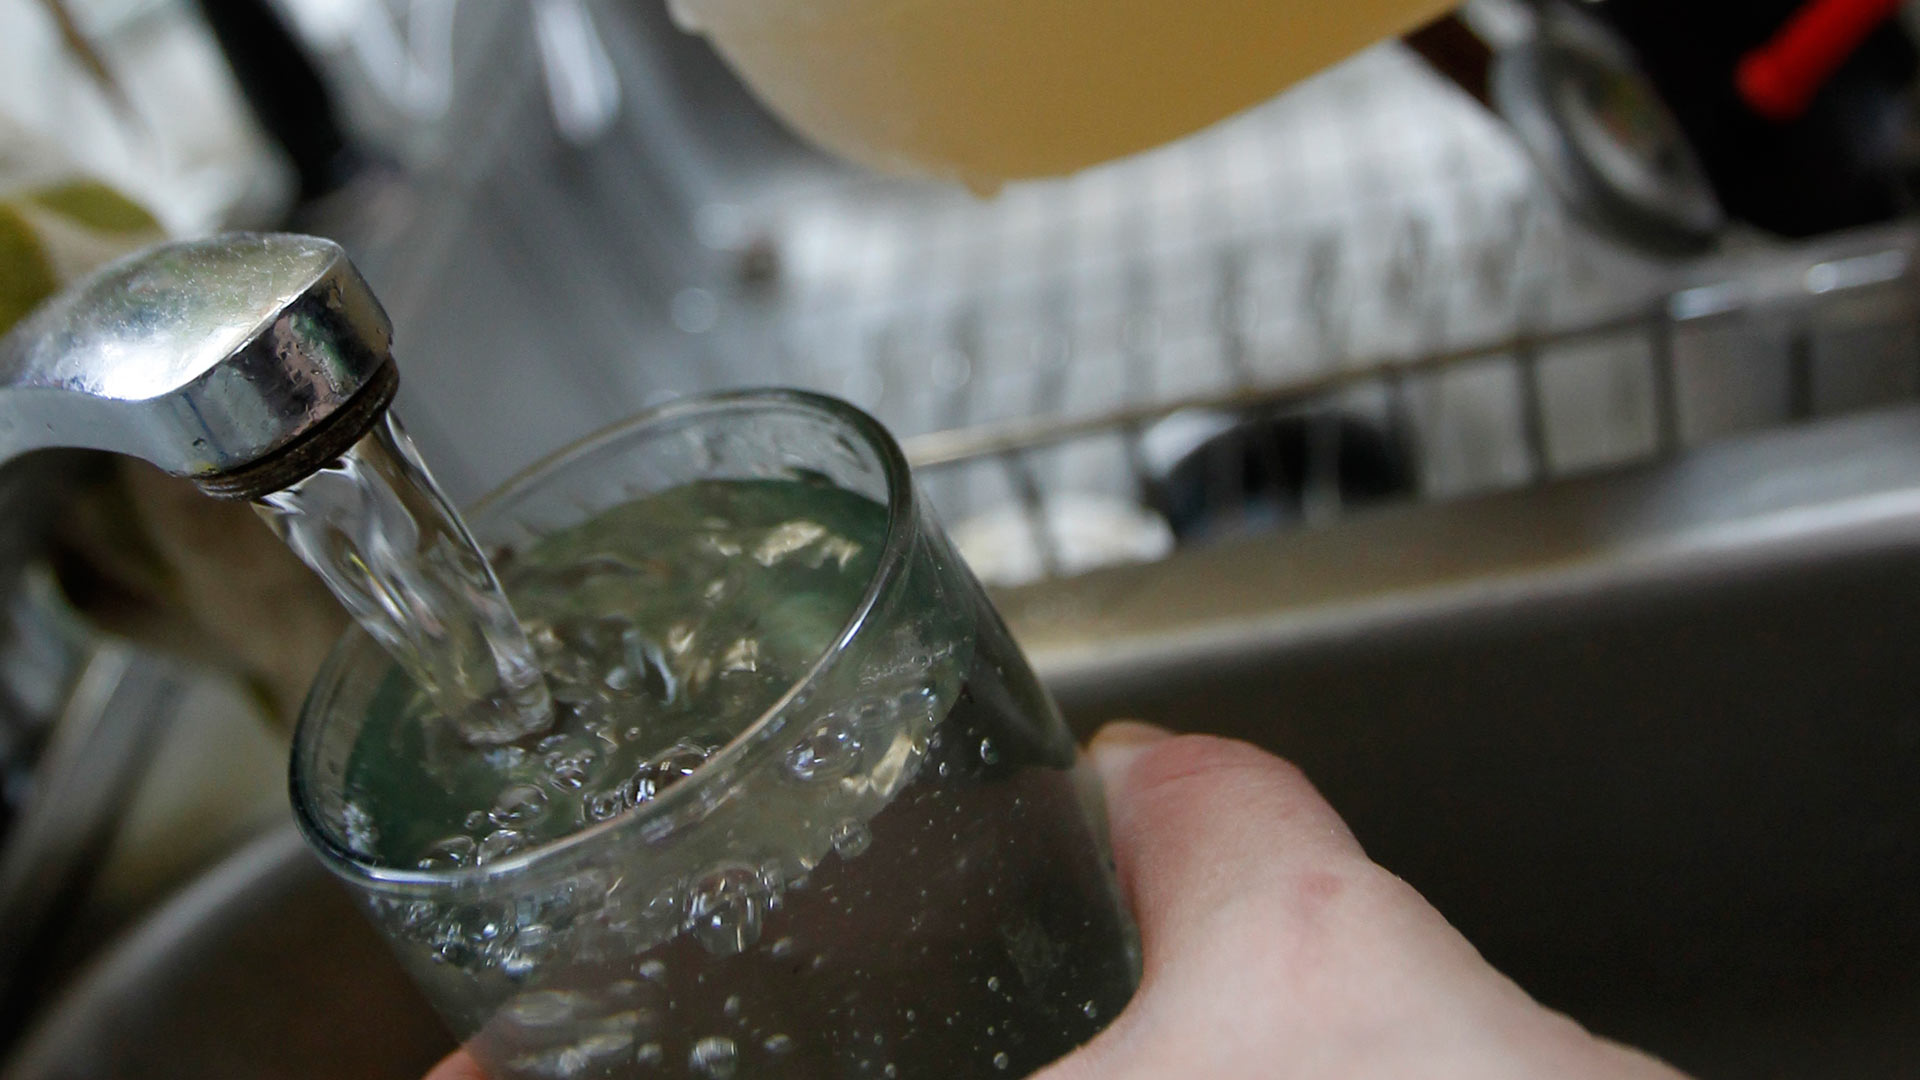 La patronal de la hostelería ve "exagerado" obligar por ley a ofrecer agua del grifo gratis